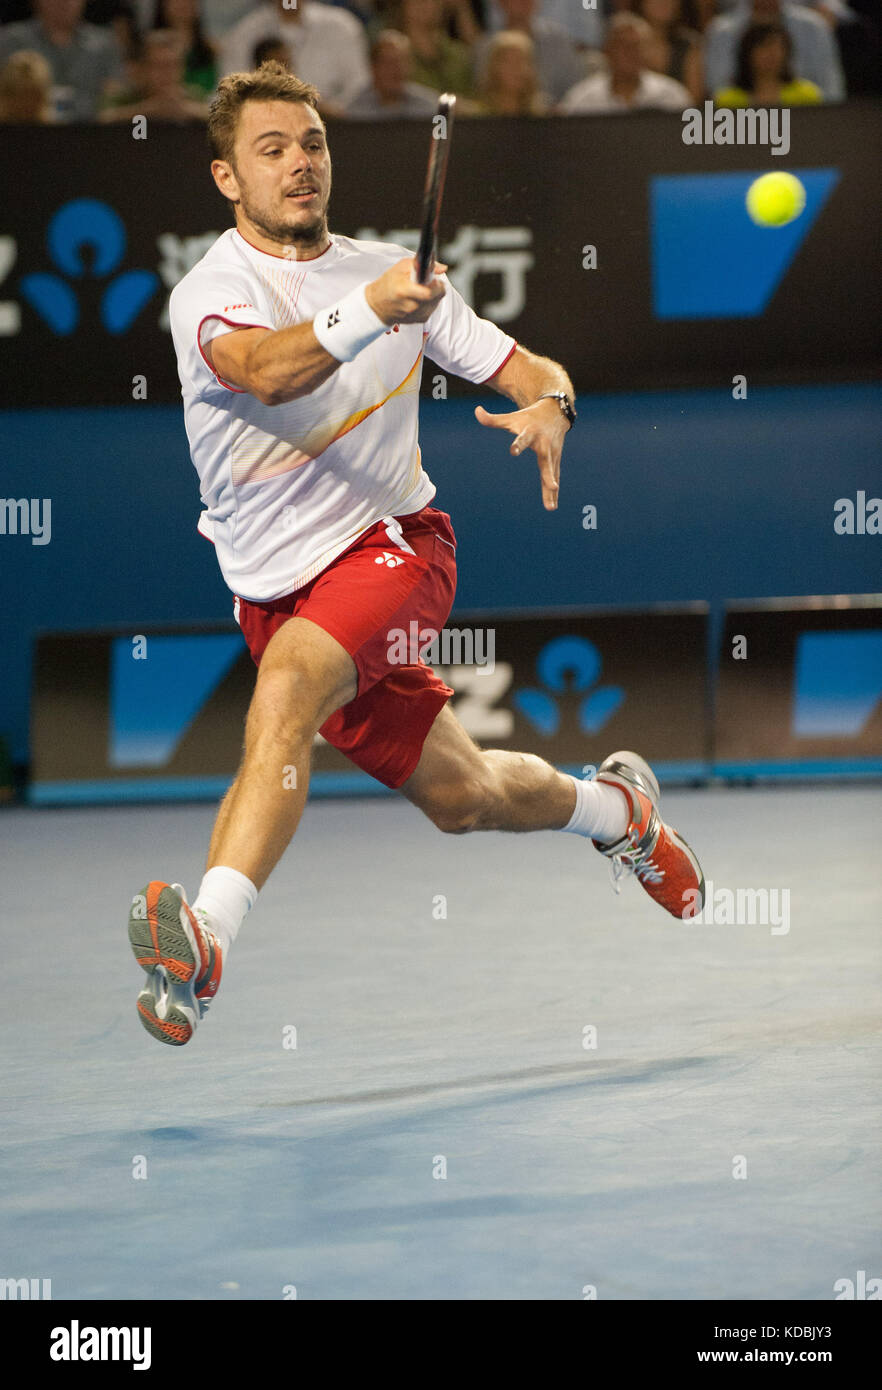 Stanislaus Wawrinka della Svizzera ha sconfitto il giocatore numero uno al mondo, R. Nadal, in Spagna, per rivendicare il campione di singolare degli Australian Open Men's 2014 Foto Stock